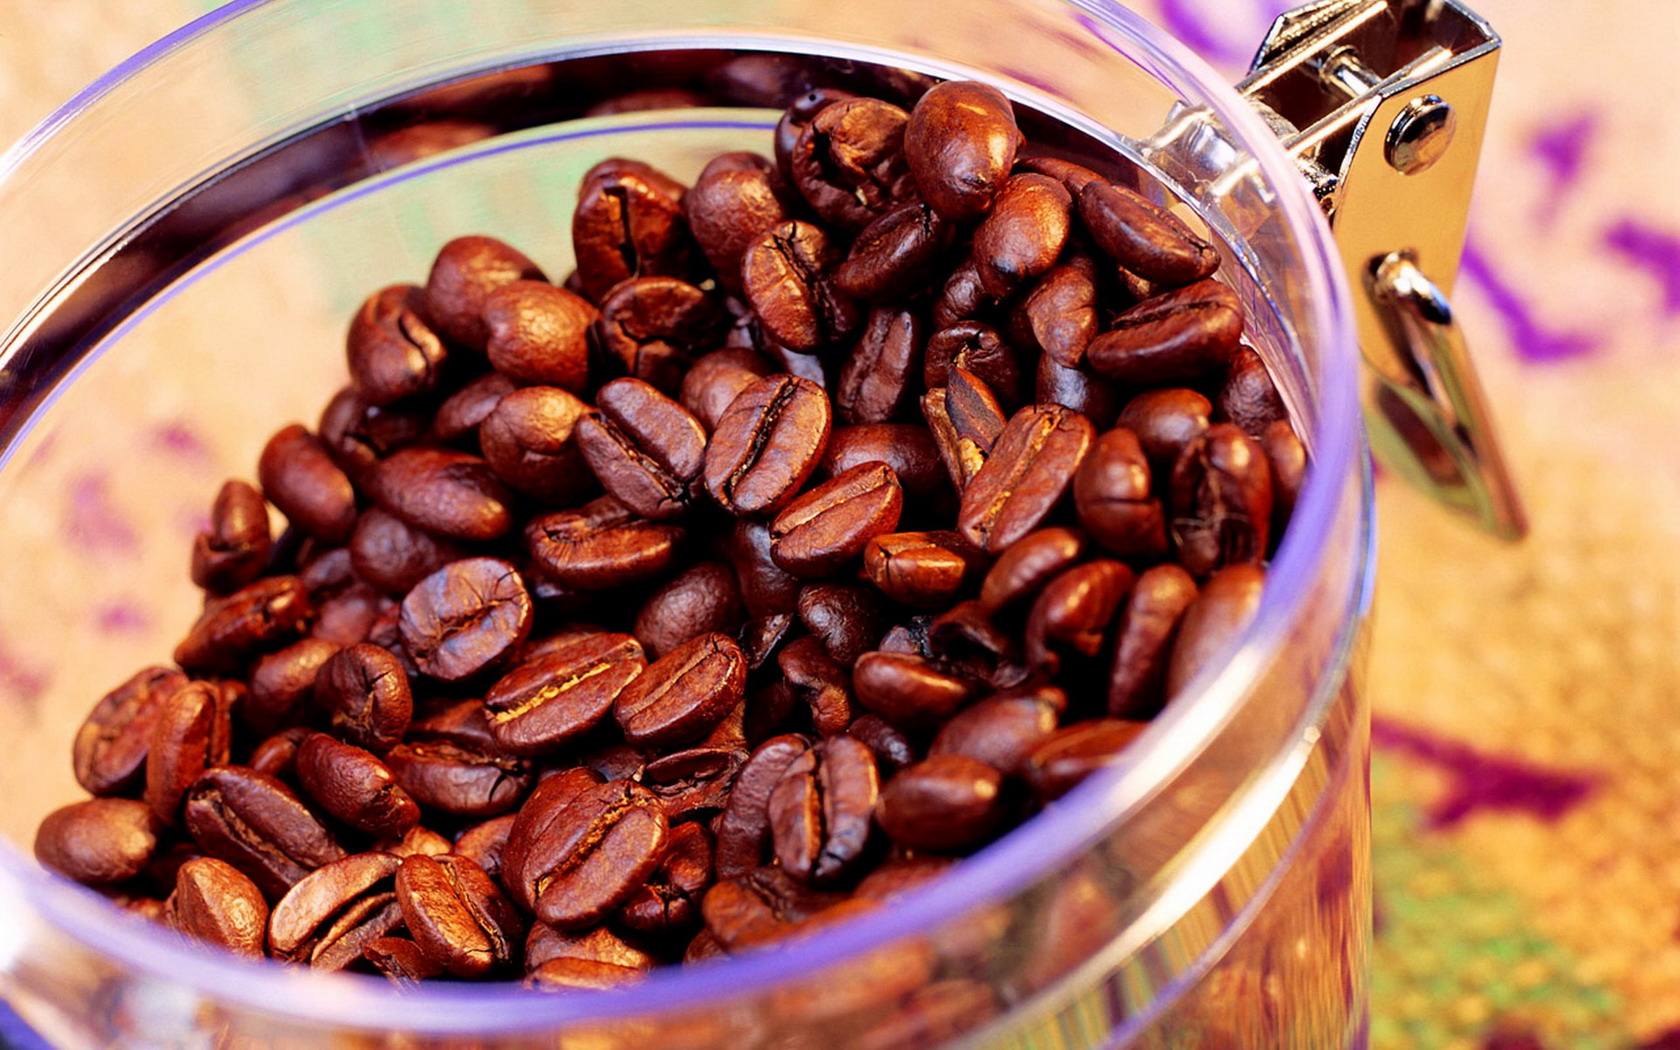 Panama coffee beans unique location creates unique flavor